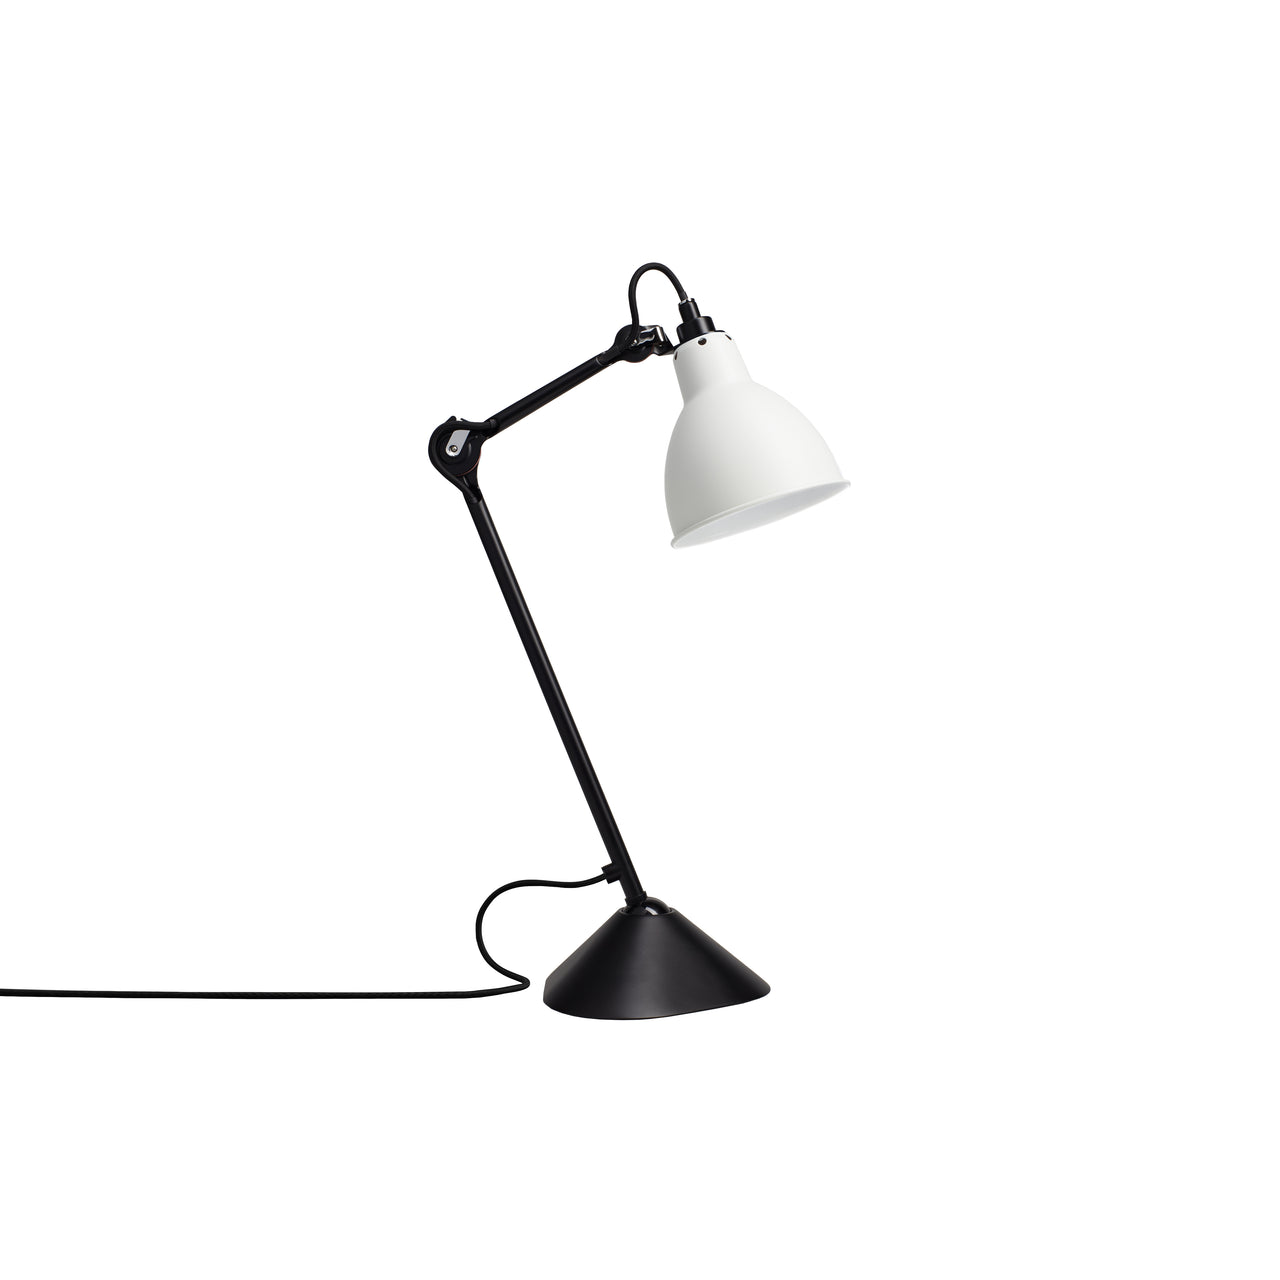 Lampe Gras N°205 Lamp: White + Round